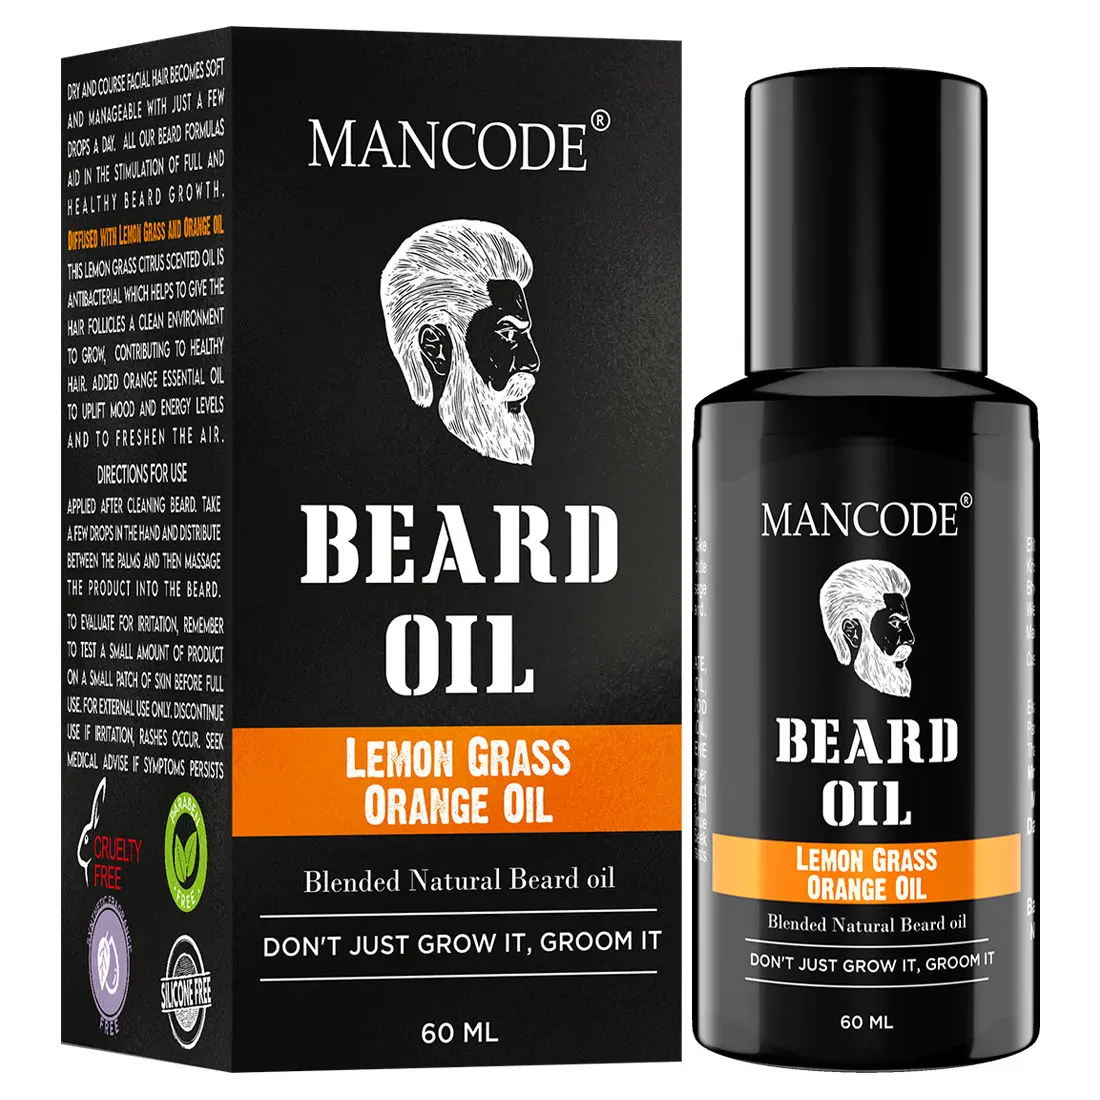 Mancode Beard Oil Lemon Grass & Orange Oil (60 ml)